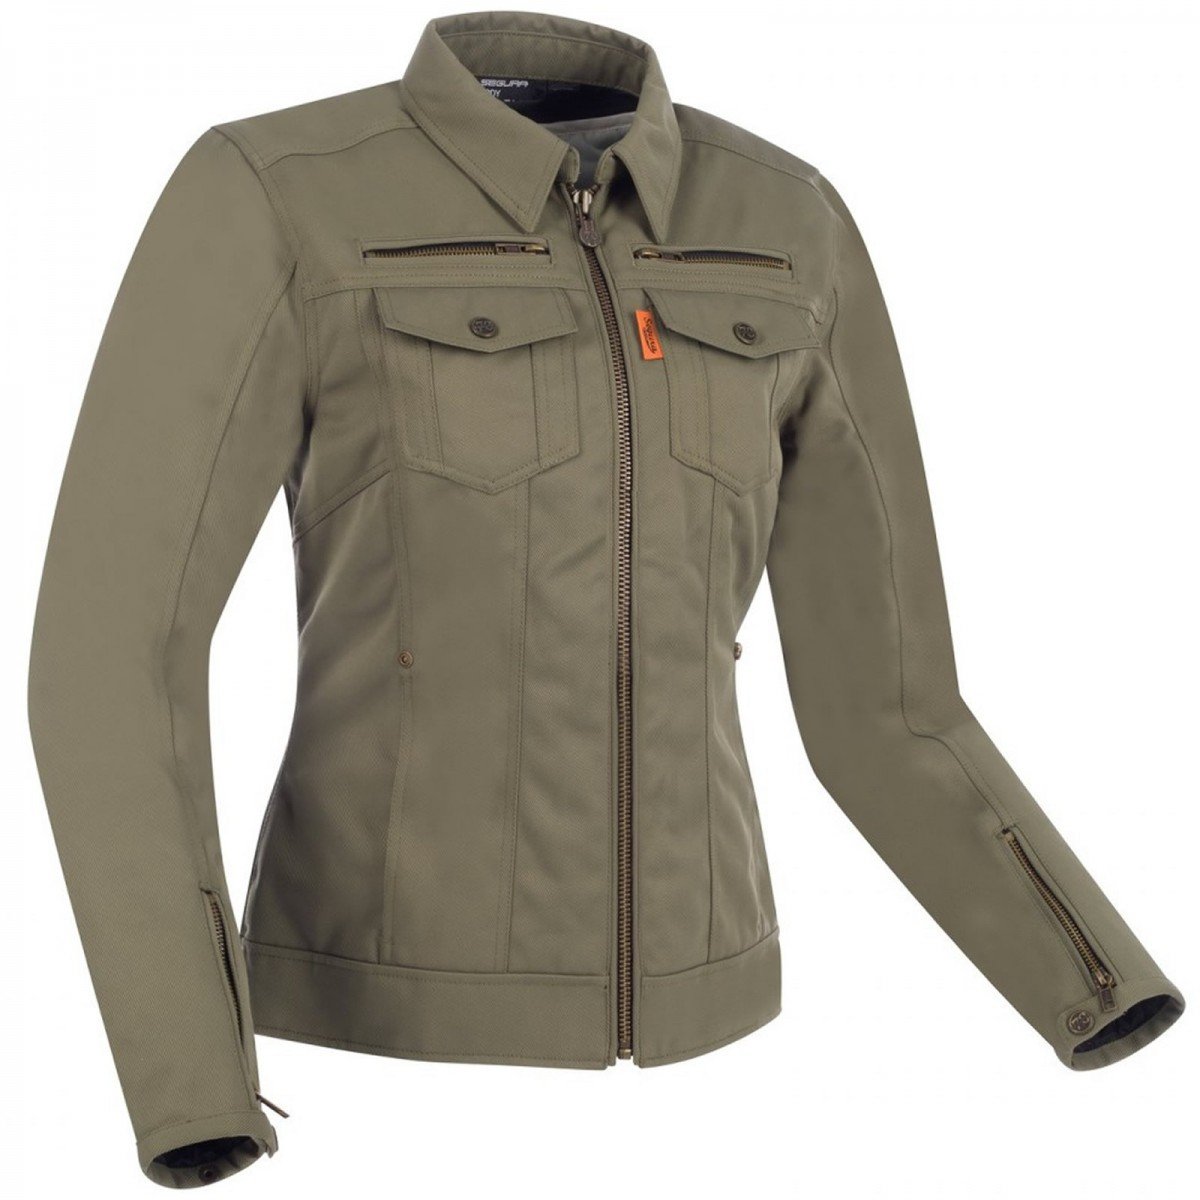 Image of Segura Lady Patrol Jacket Khaki Size T4 ID 3660815163207